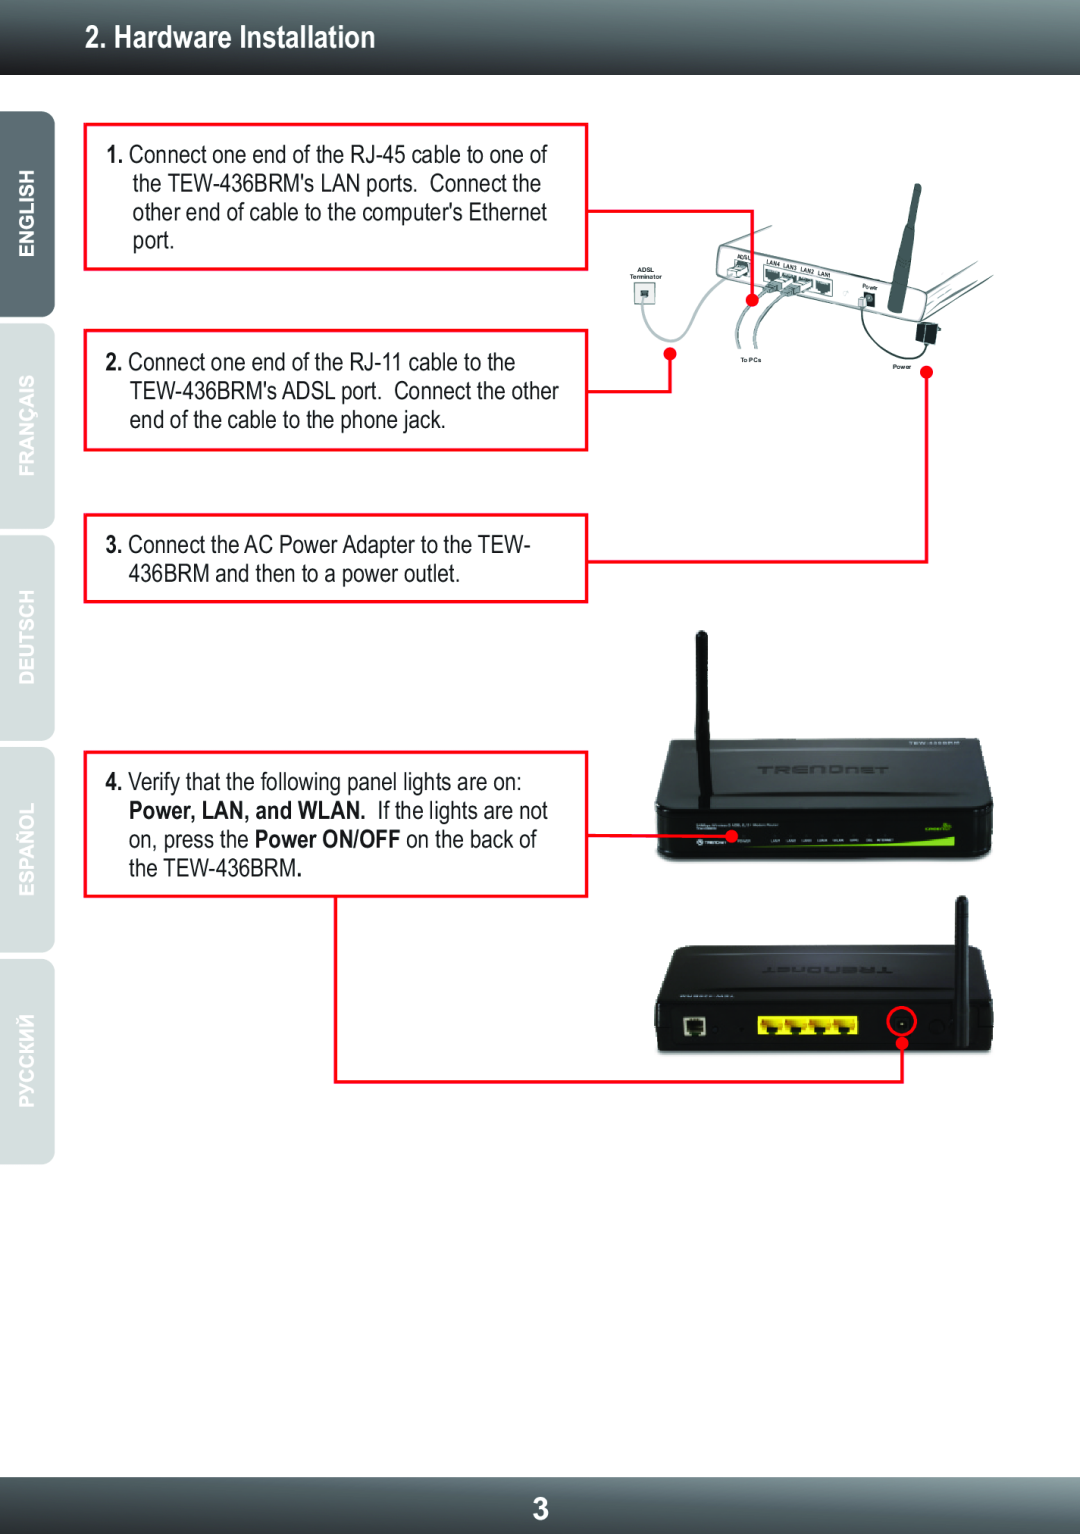 TRENDnet Wireless ADSL Modem Router Hardware Installation, ADSL Terminator, Adsl, LAN4, LAN3, LAN2, LAN1, To PCs, Power 